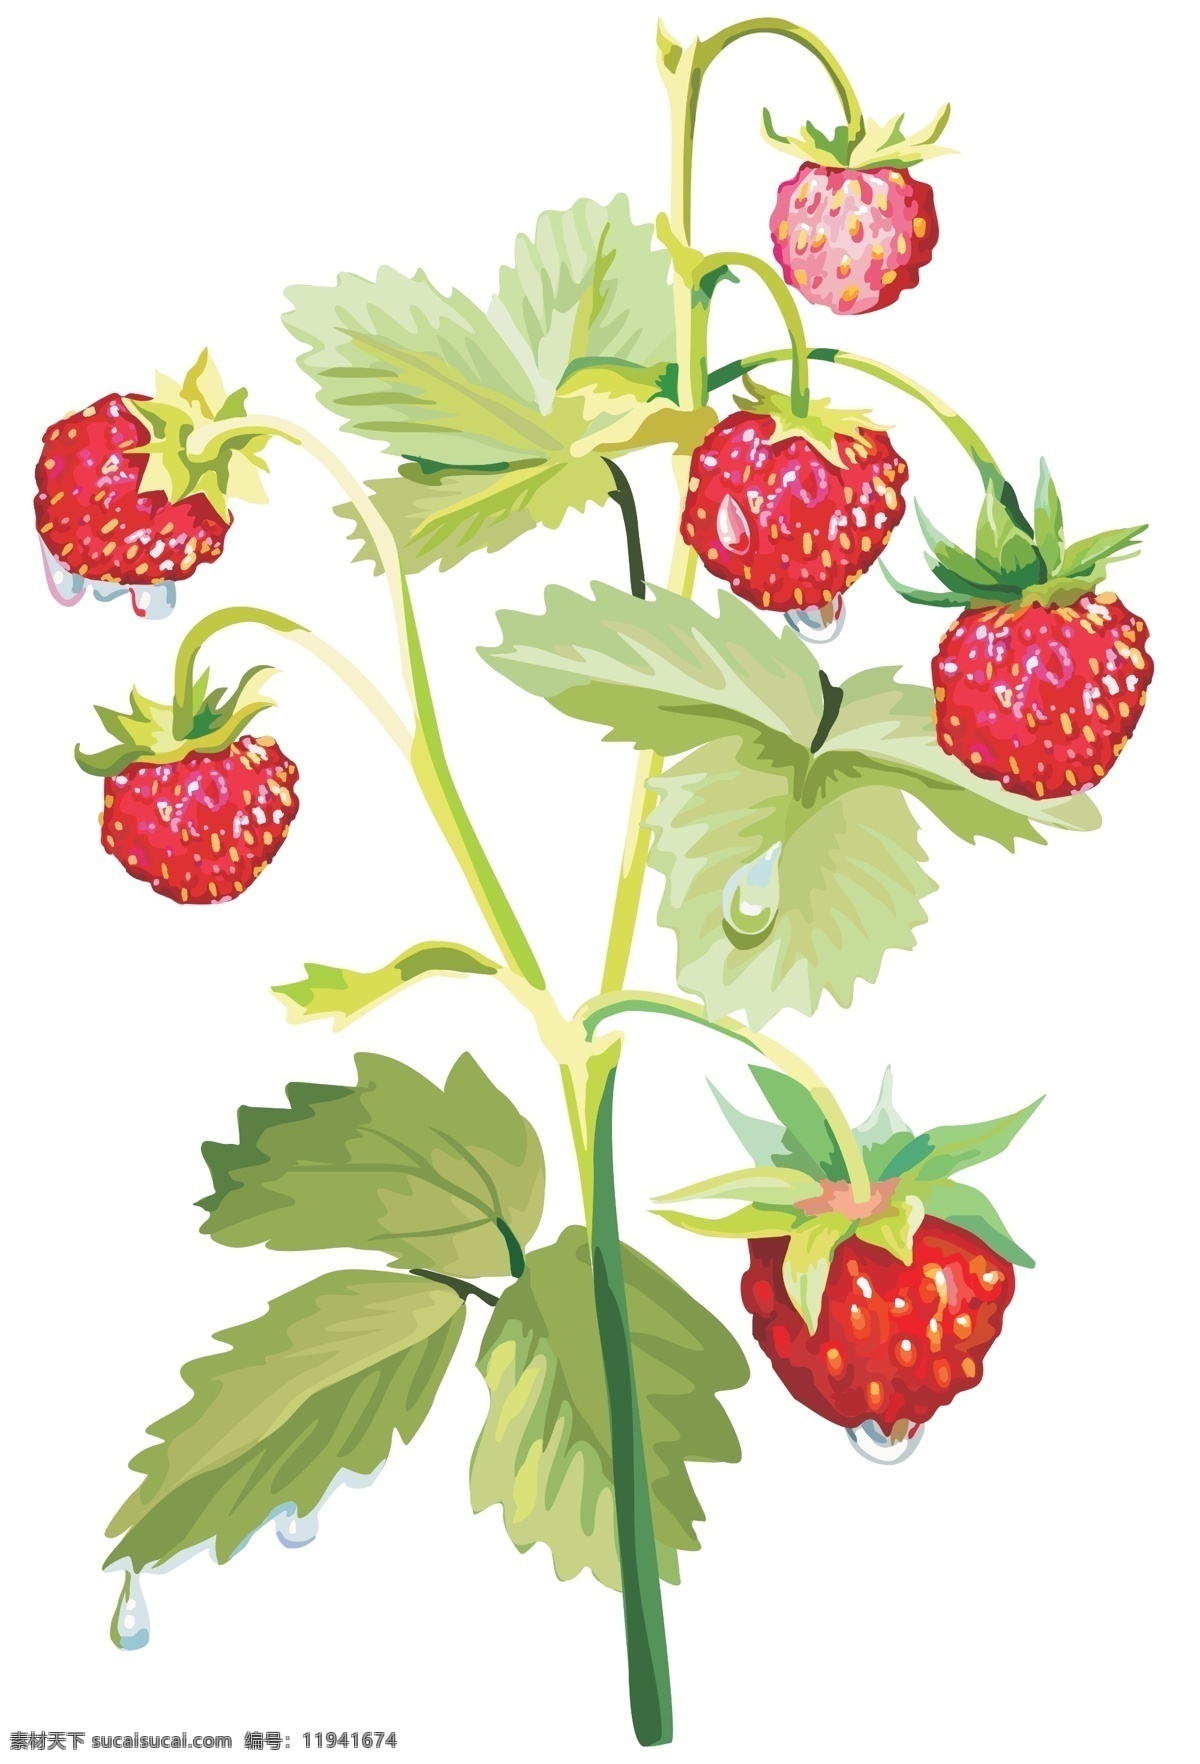 草莓 奶油草莓 树莓 水果 一株草莓 一棵草莓 超市水果 特写 高清 绿叶 叶子 新鲜水果 红色 微距 花托 大棚水果 生物世界 背景分层 白色背景 蔬果 分层 源文件